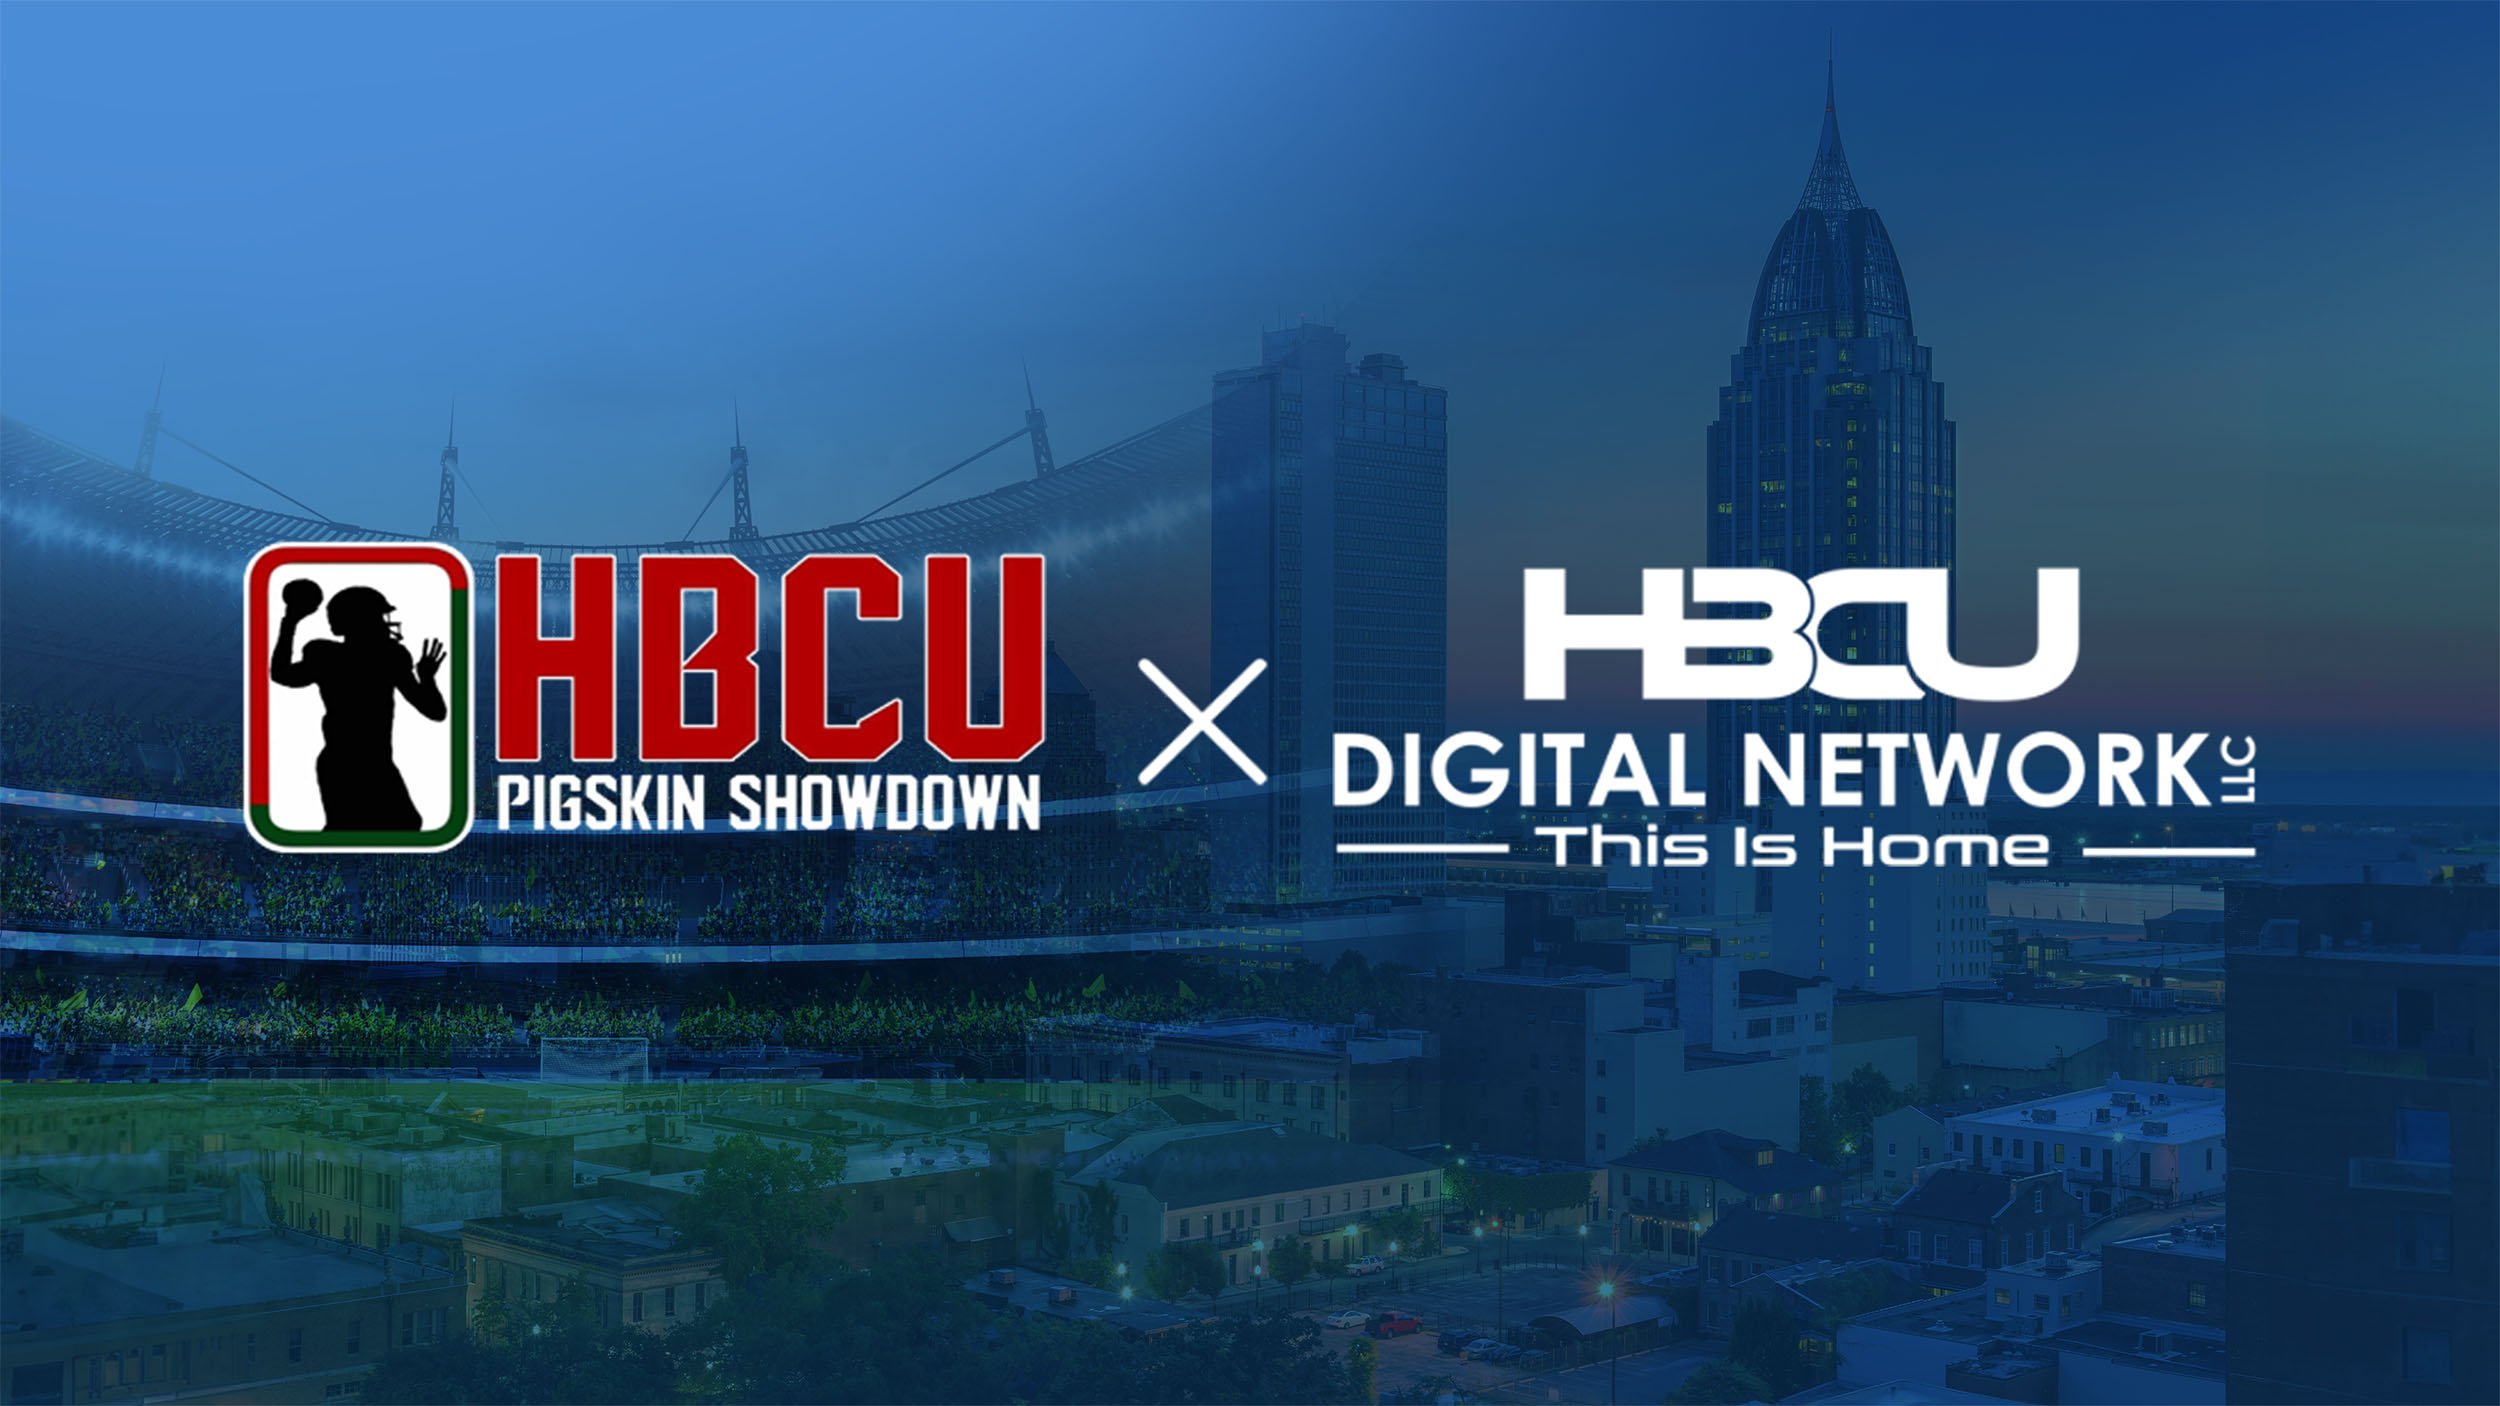 HBCU Pigskin Showdown partnership with HBCU Digital